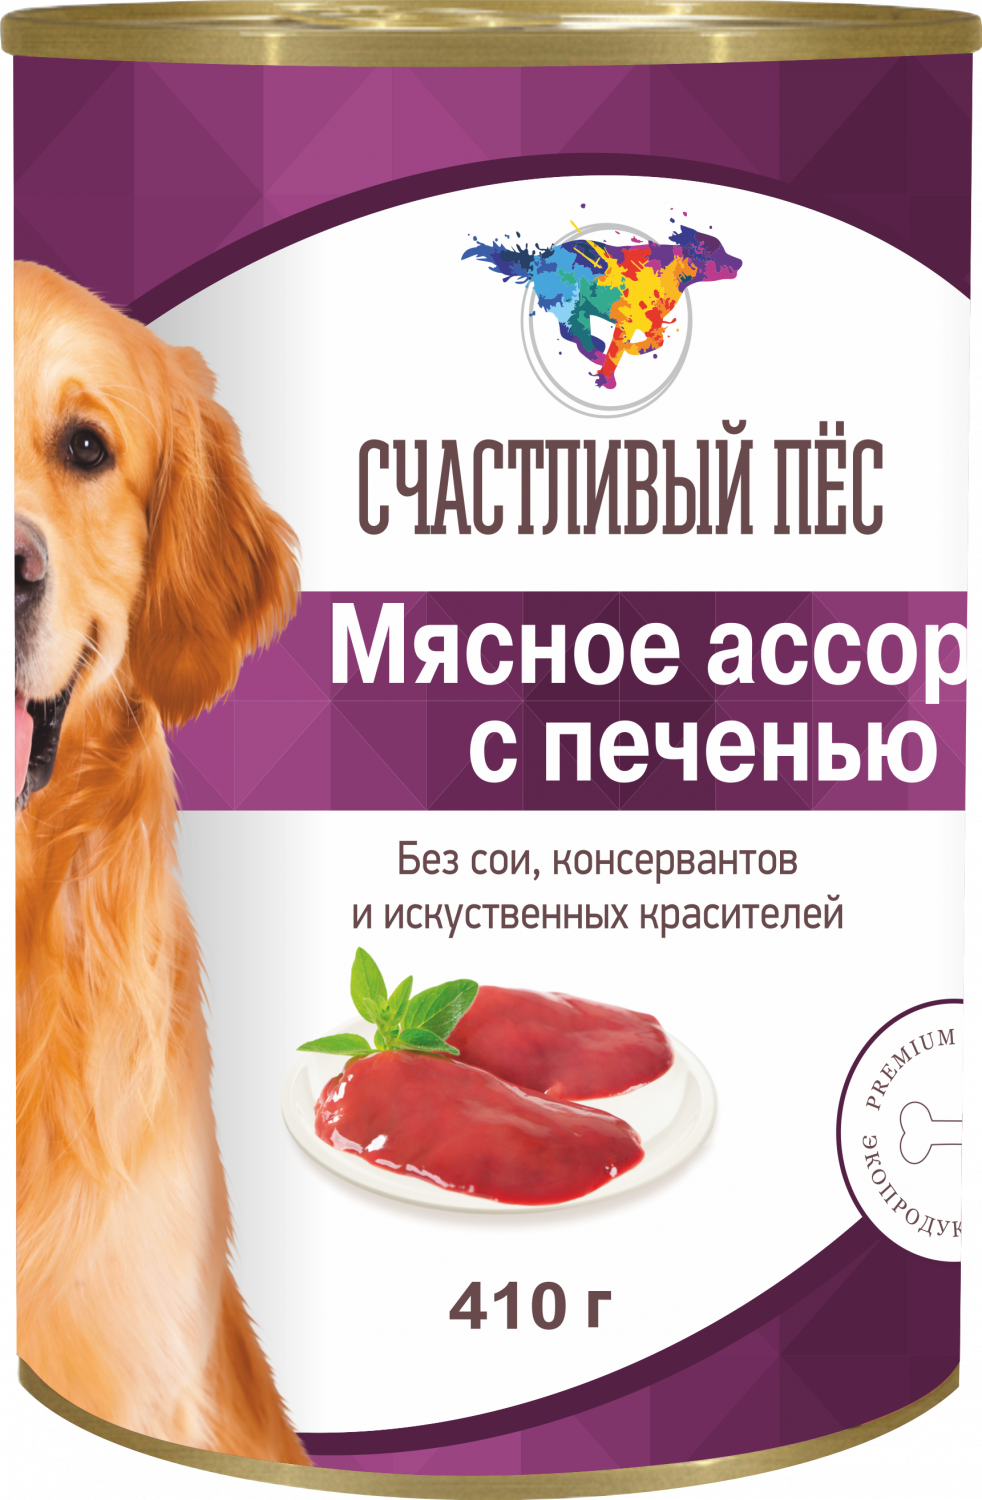 Купить консервы для собак Счастливый пес, мясное ассорти с печенью, 20шт по  410г, цены в Москве на Мегамаркет | Артикул: 100026649754